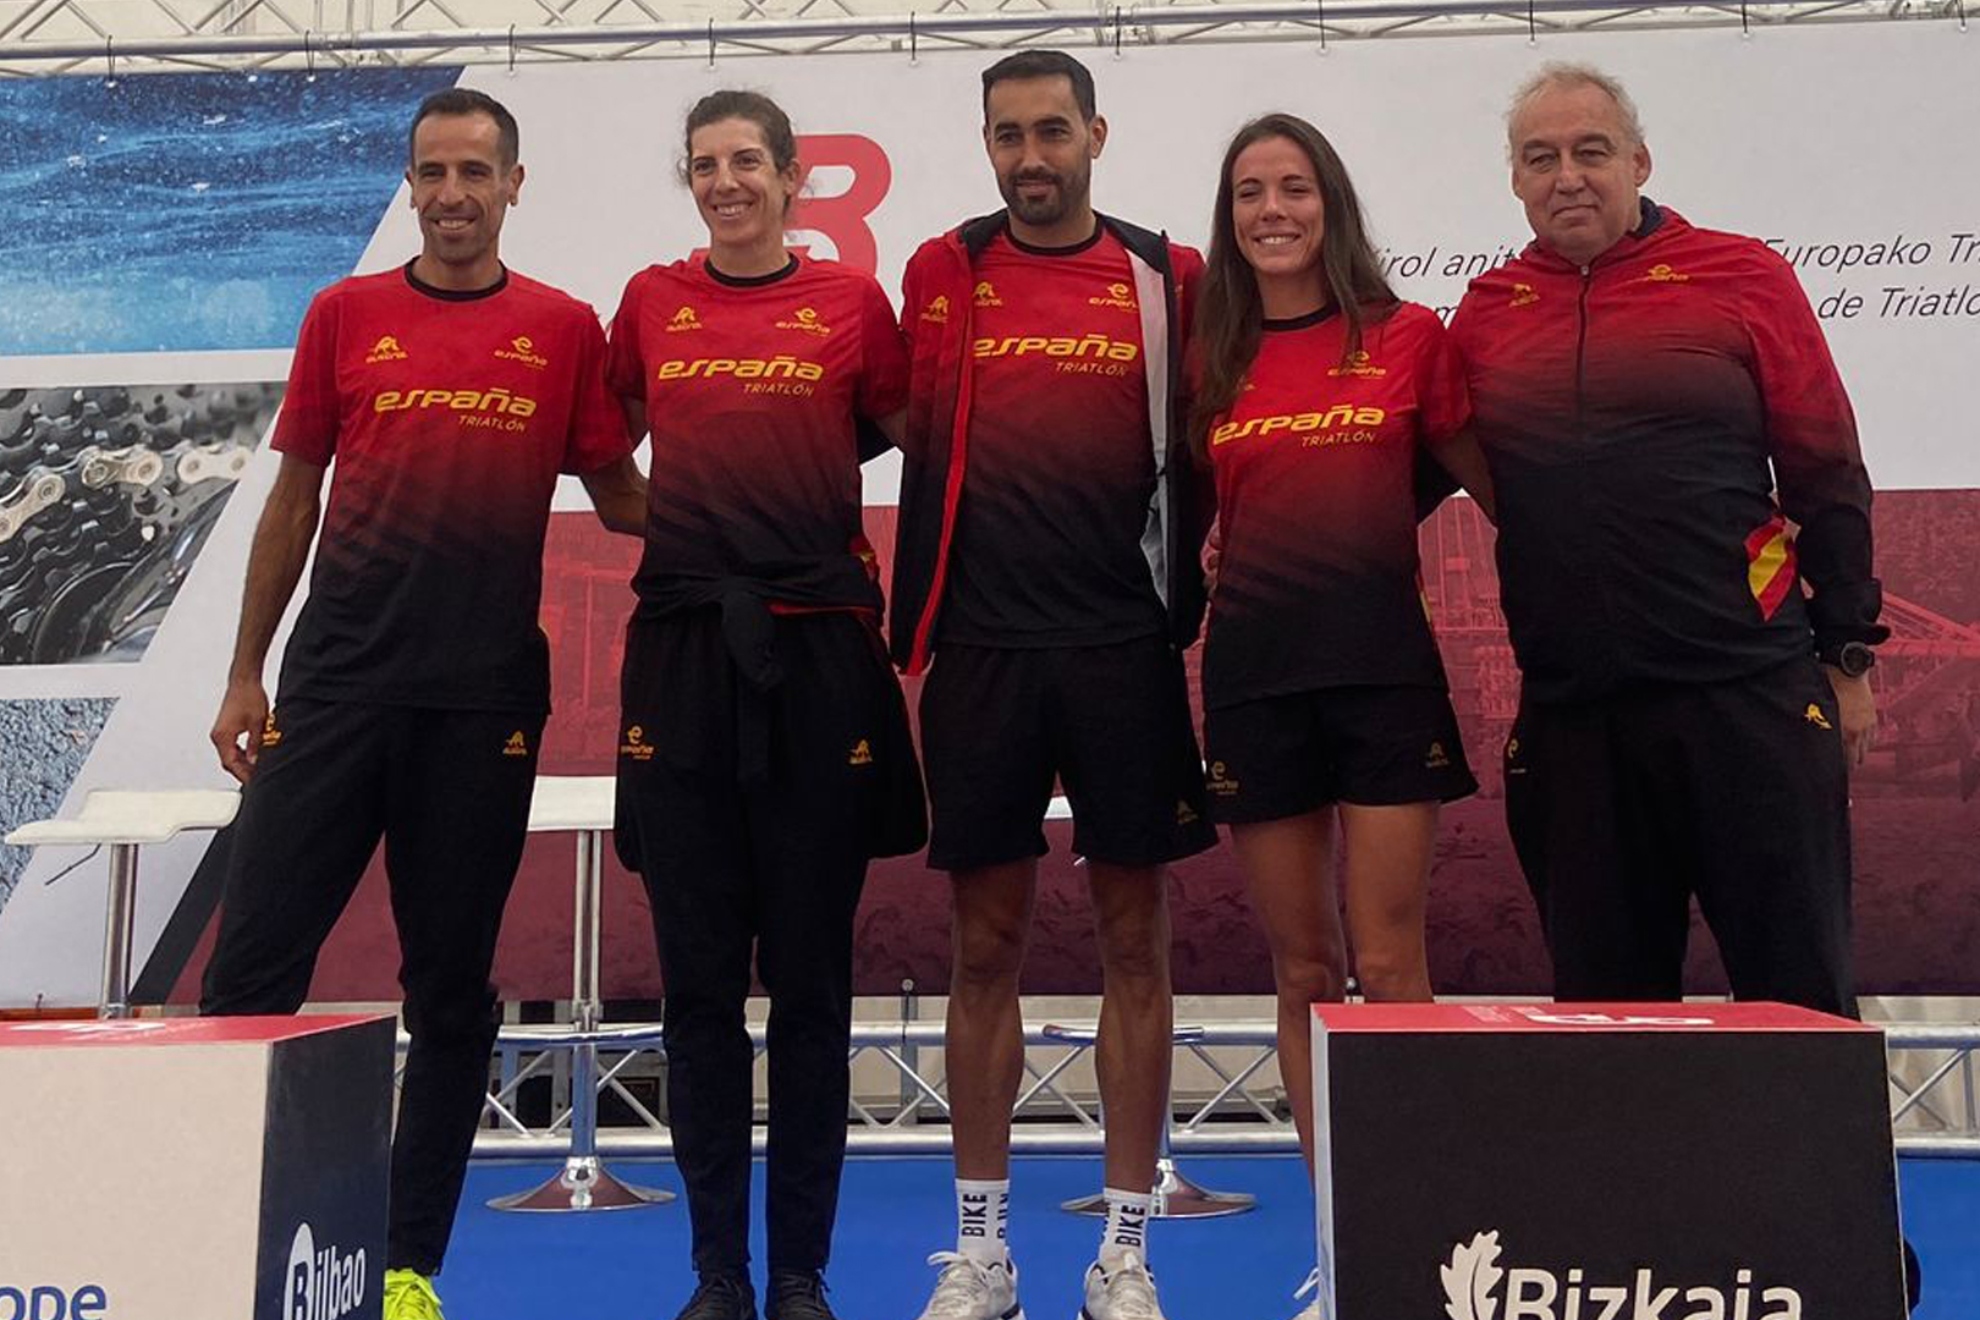 El equipo español de duatlón, con el reto de las medallas en el Europeo de Triatlón Bilbao Bizkaia